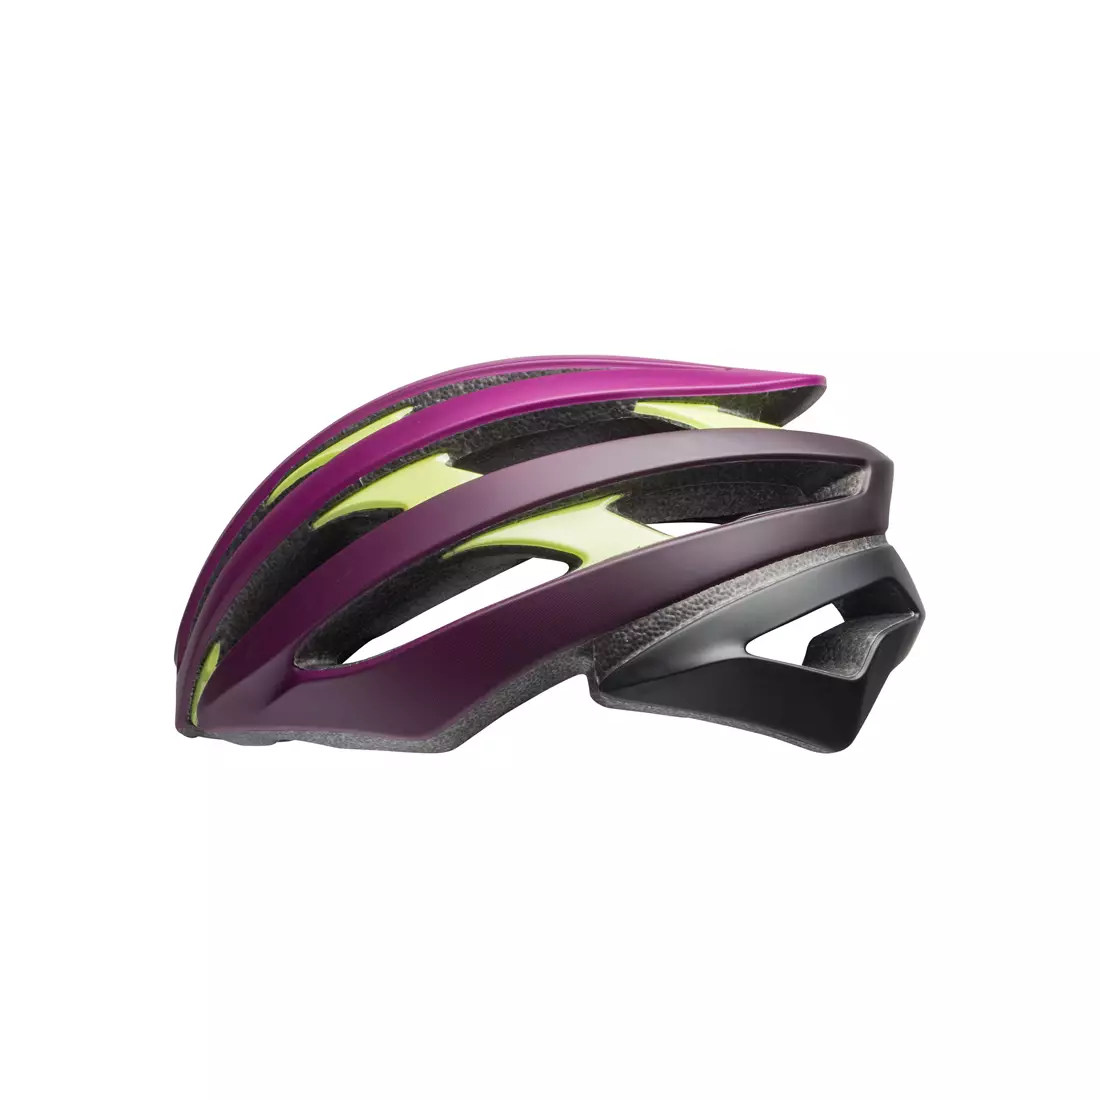 Bicycle road helmet BELL STRATUS matte plum pear black 